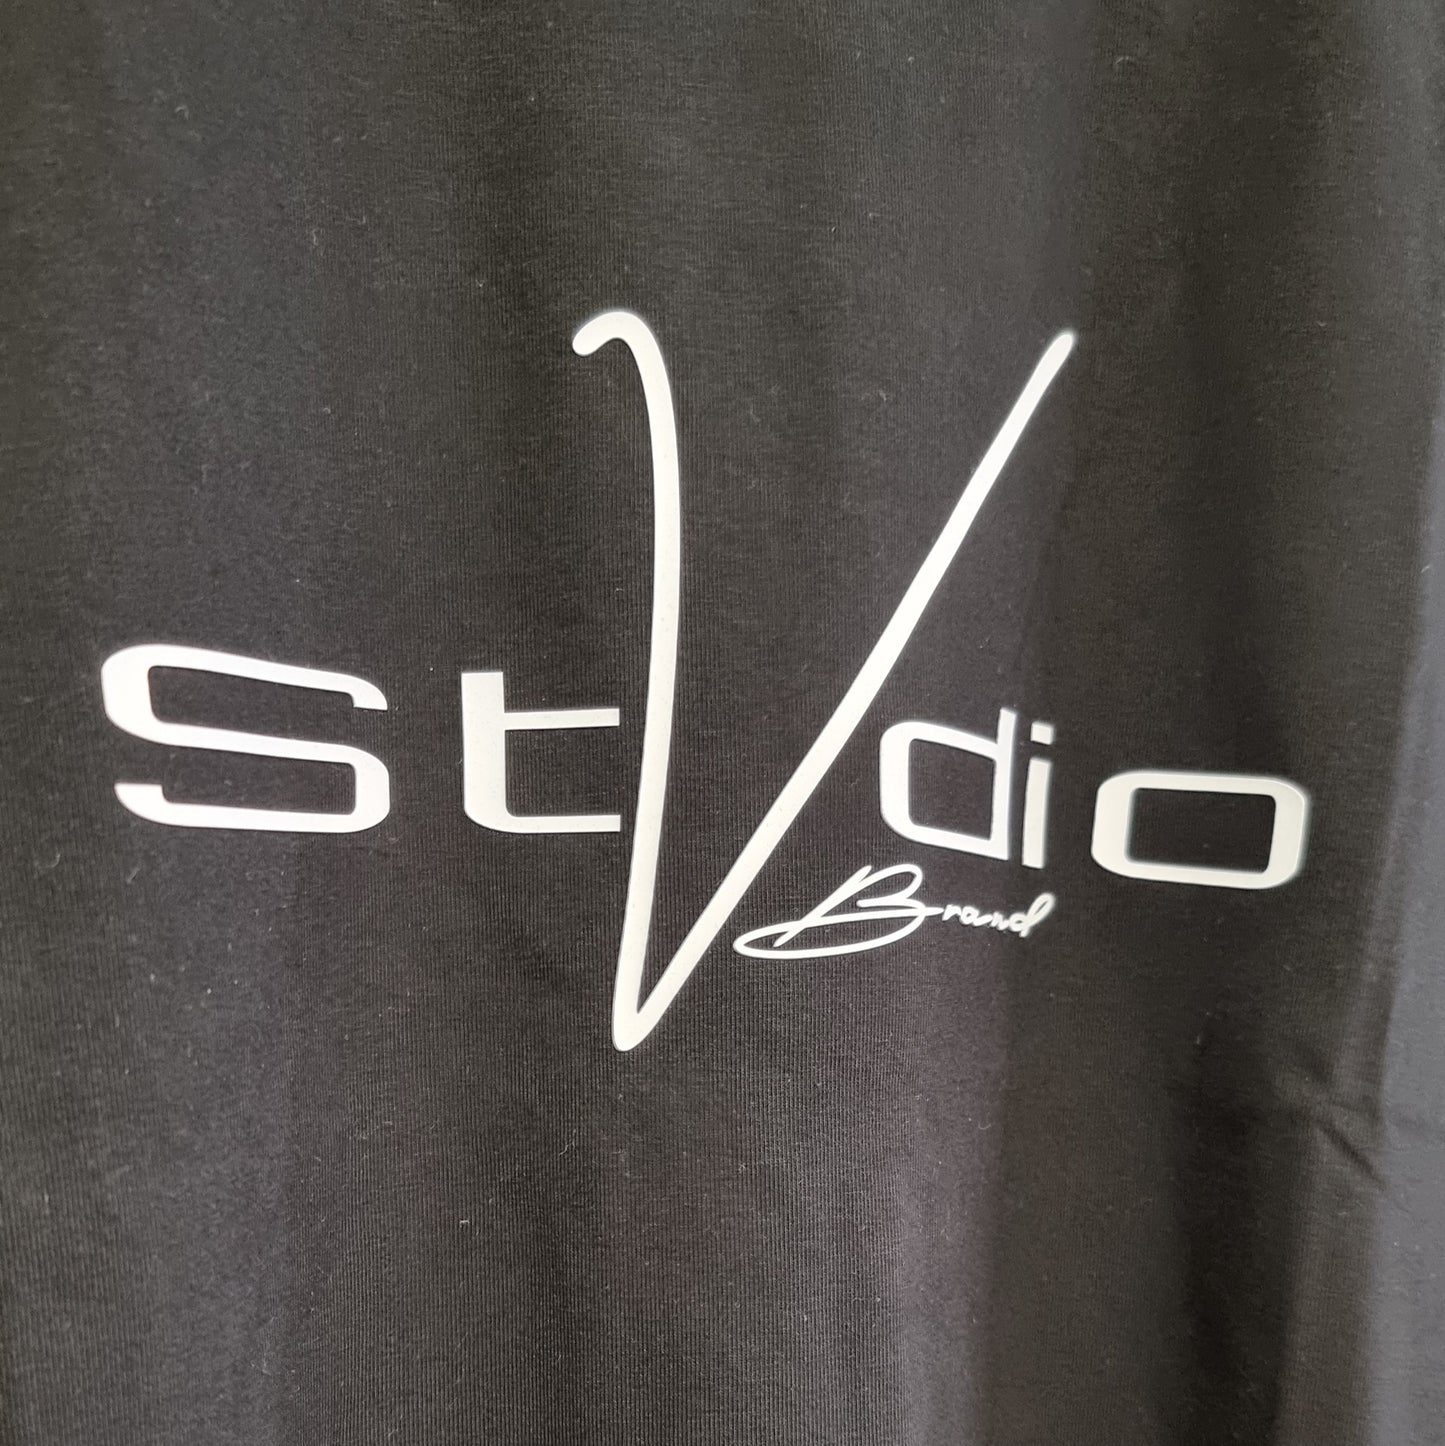 StVdio Classic Logo Tee